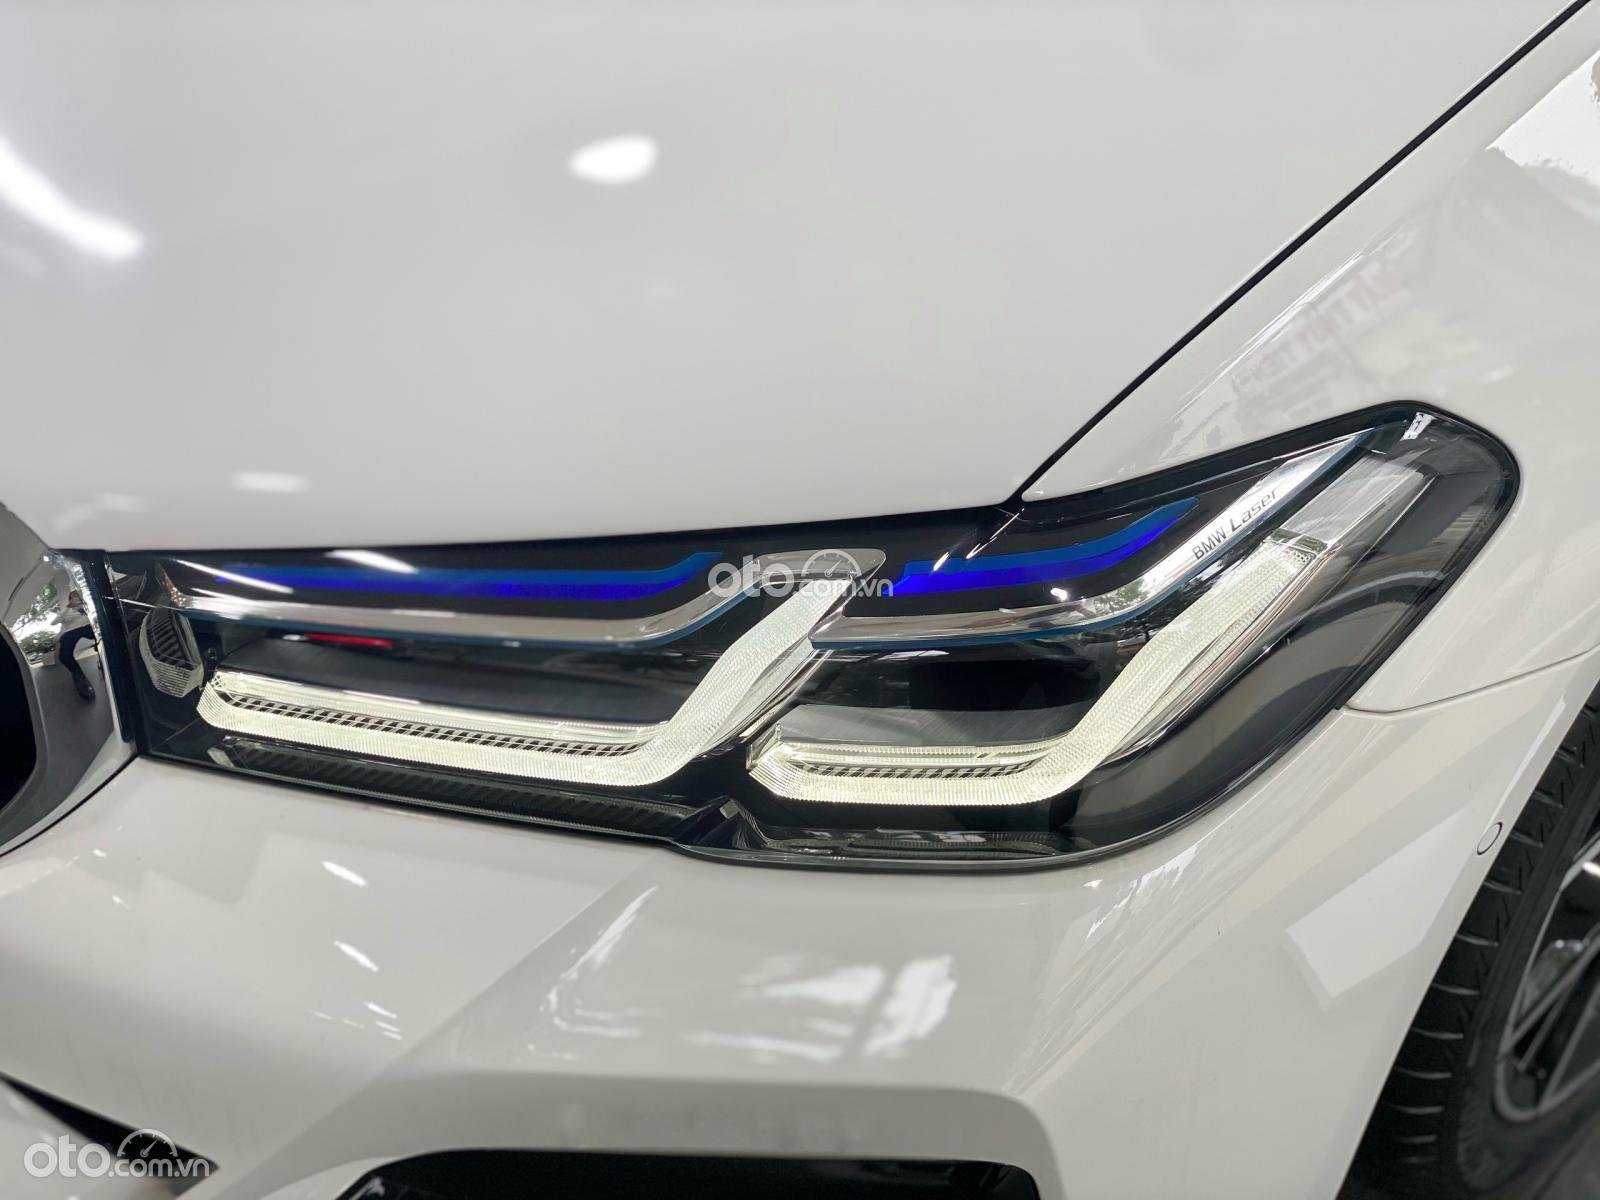 Đèn chiếu sáng trước của BMW 520i lắp ráp thiết kế tinh tế, mamg tính thẩm mỹ cao.